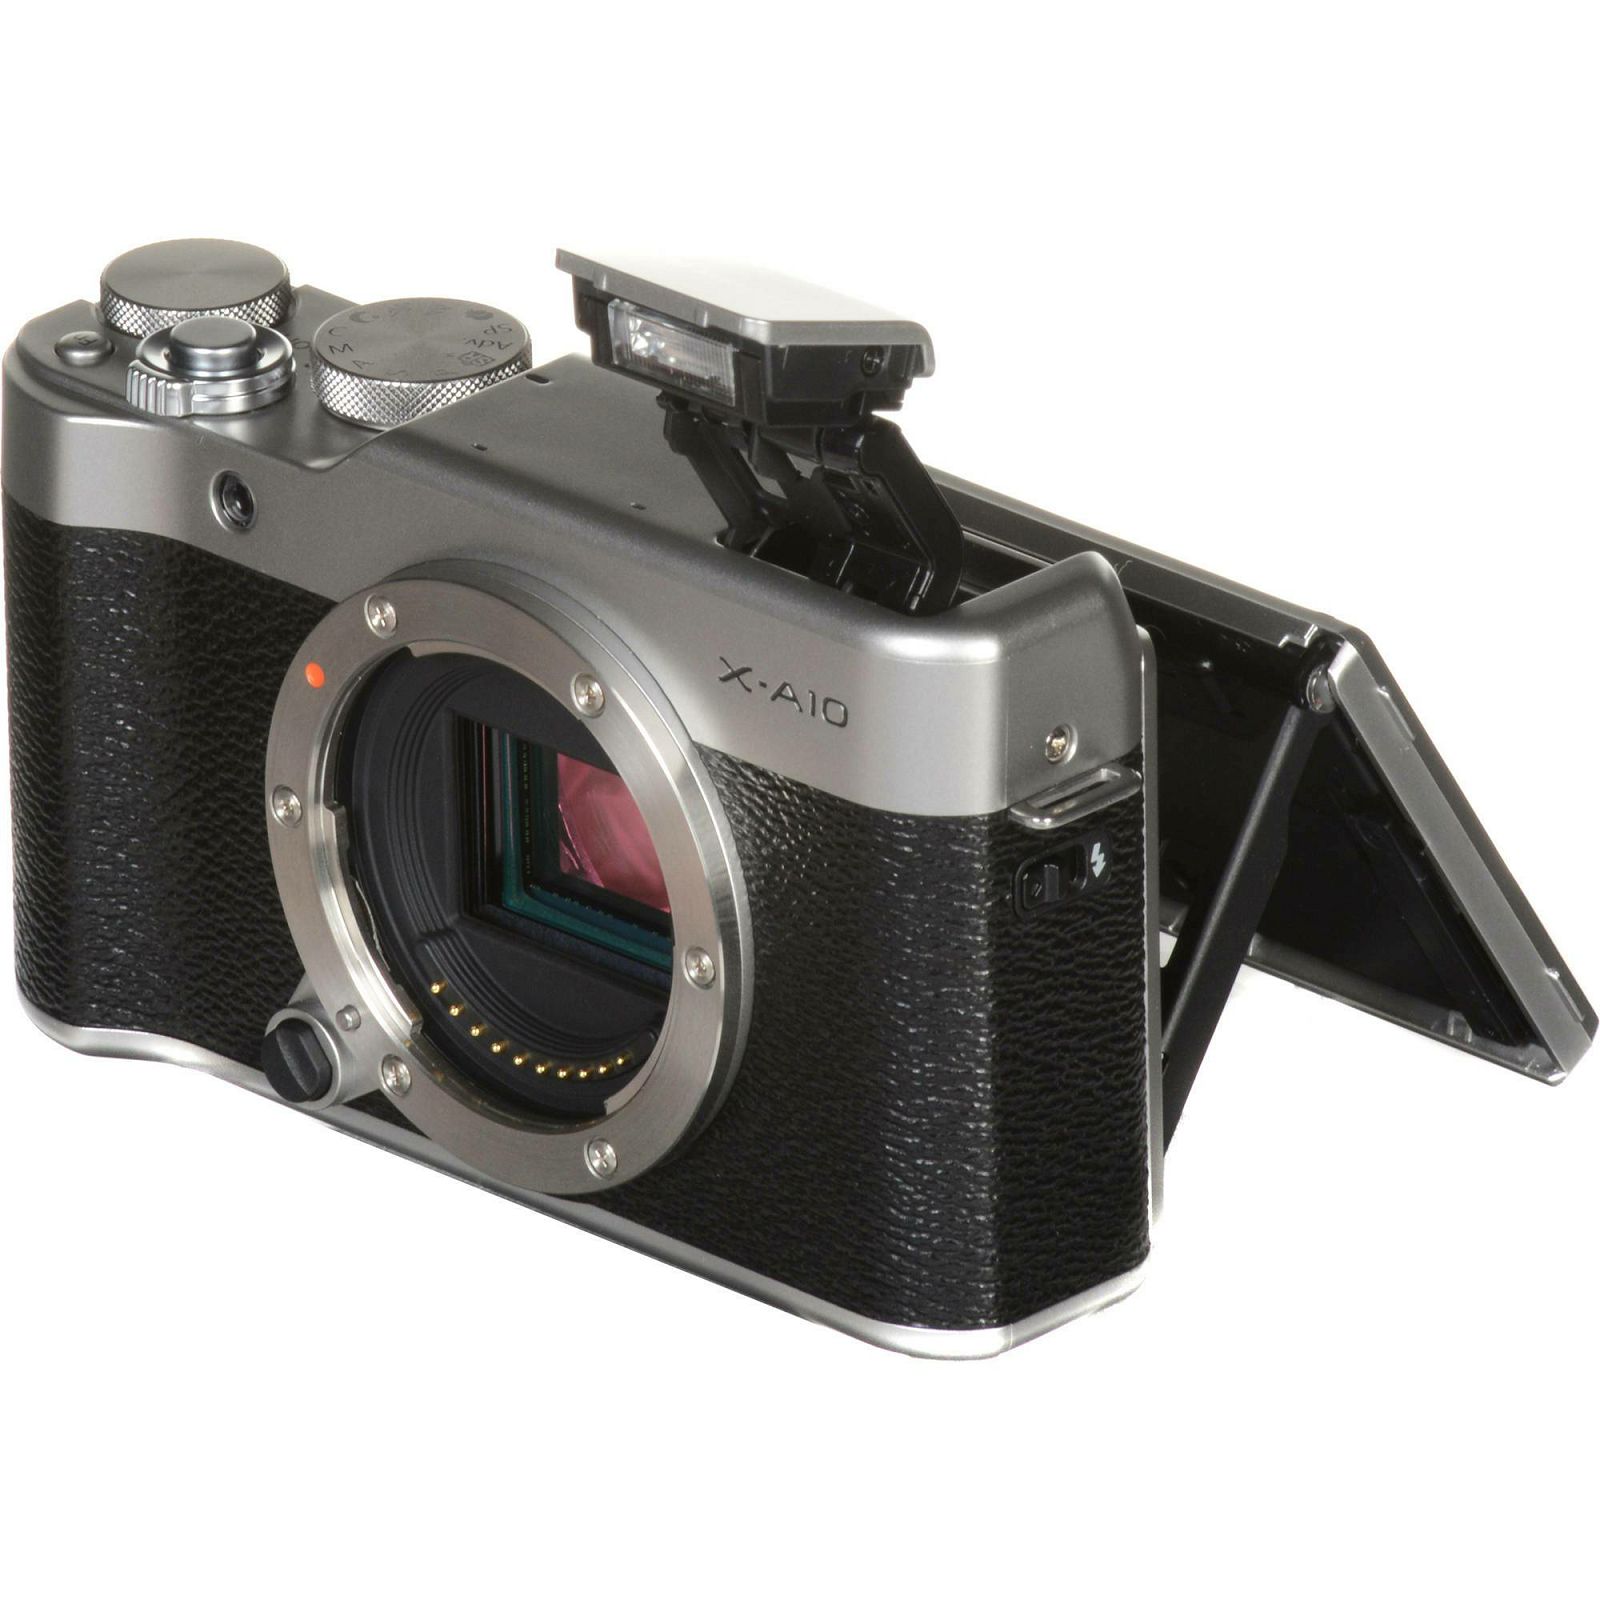 Fujifilm X-A10 + XC 16-50 II KIT digitalni mirrorless fotoaparat s objektivom 16-50mm f3.5-5.6 OIS II Fuji Body 16 MP APS-C 3.0" 1040k Tiltable and lens